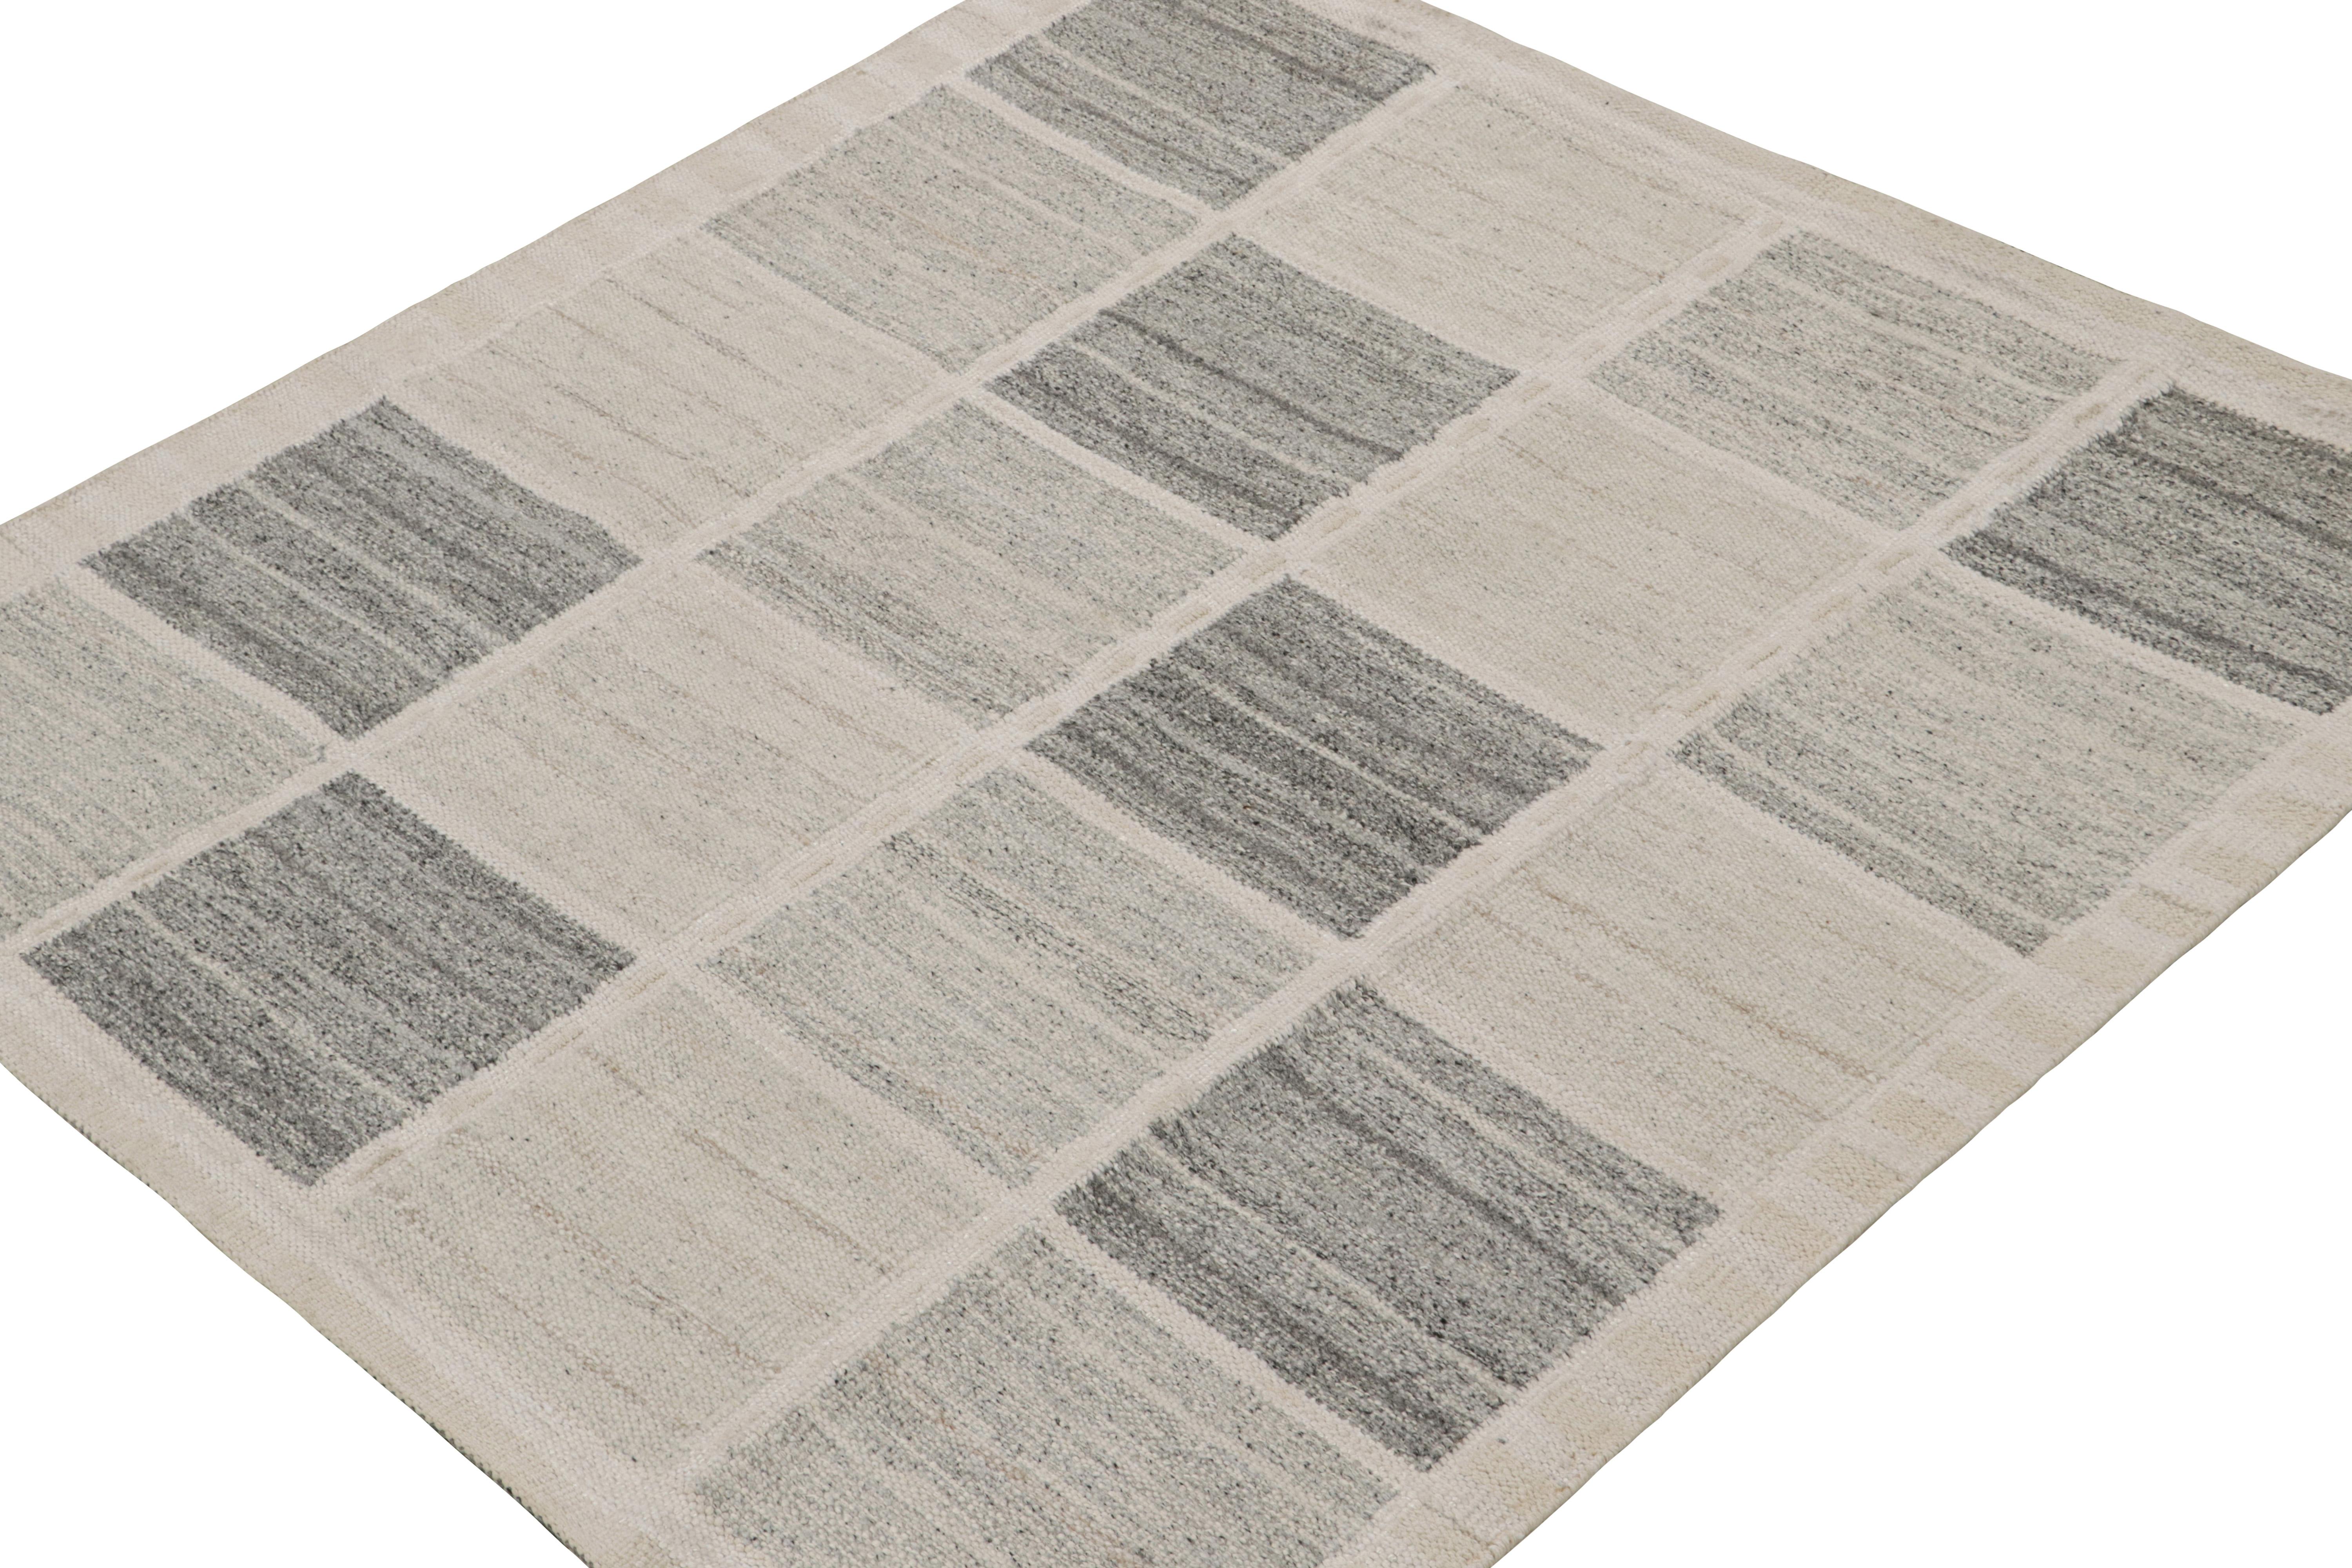 Dieser 6x6 quadratische Kilim ist ein Flachgewebe im schwedischen Stil aus der skandinavischen Teppichkollektion von Rug & Kilim. Dieser handgewebte Teppich aus Wolle, Baumwolle und natürlichen Garnen ist von den alten schwedischen Deko-Teppichen